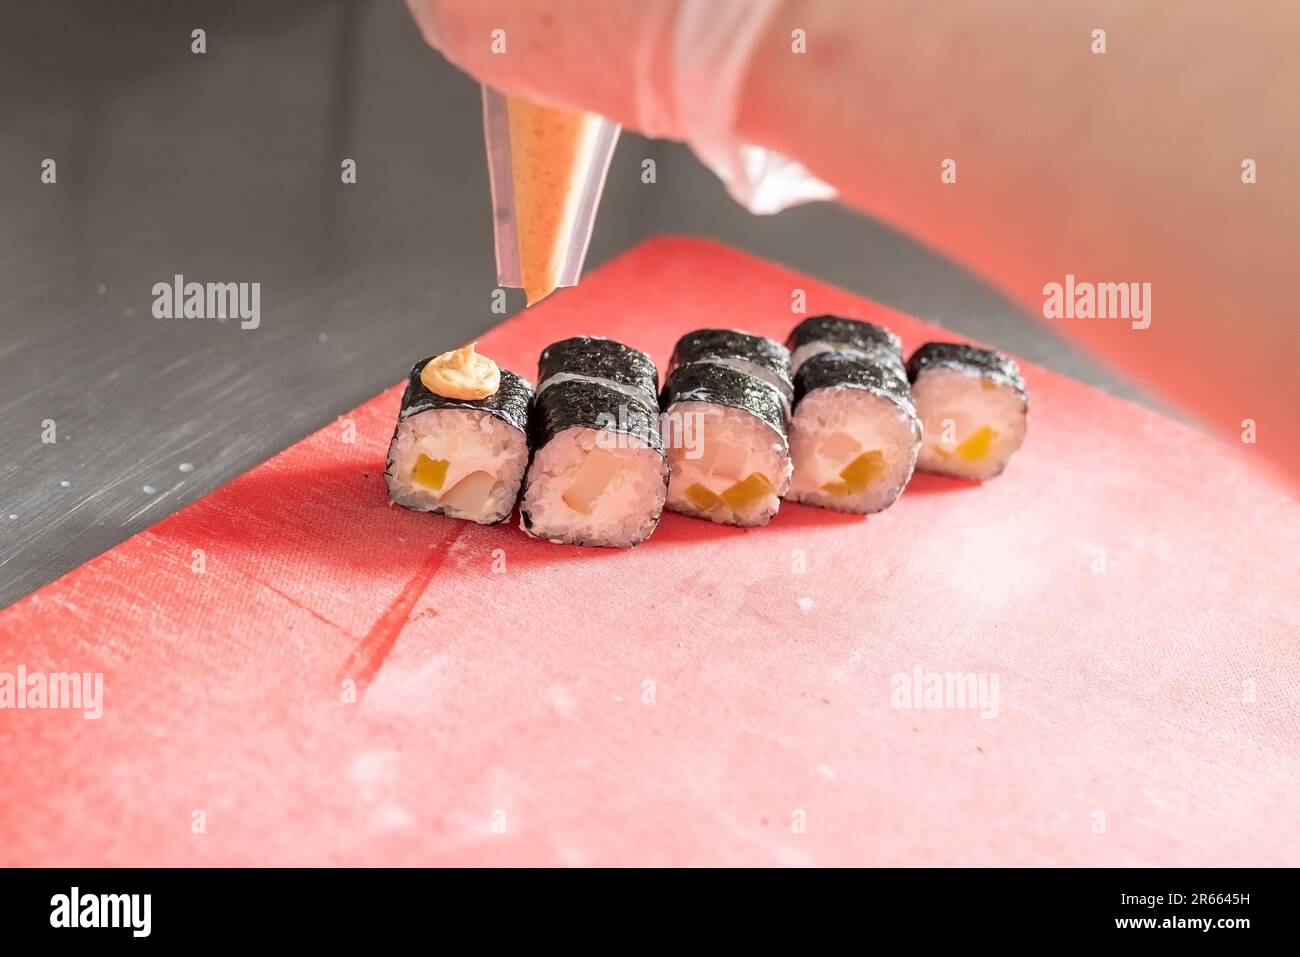 Application de la sauce épicée sur les sushis au fromage et au daikon. Photo de haute qualité Banque D'Images